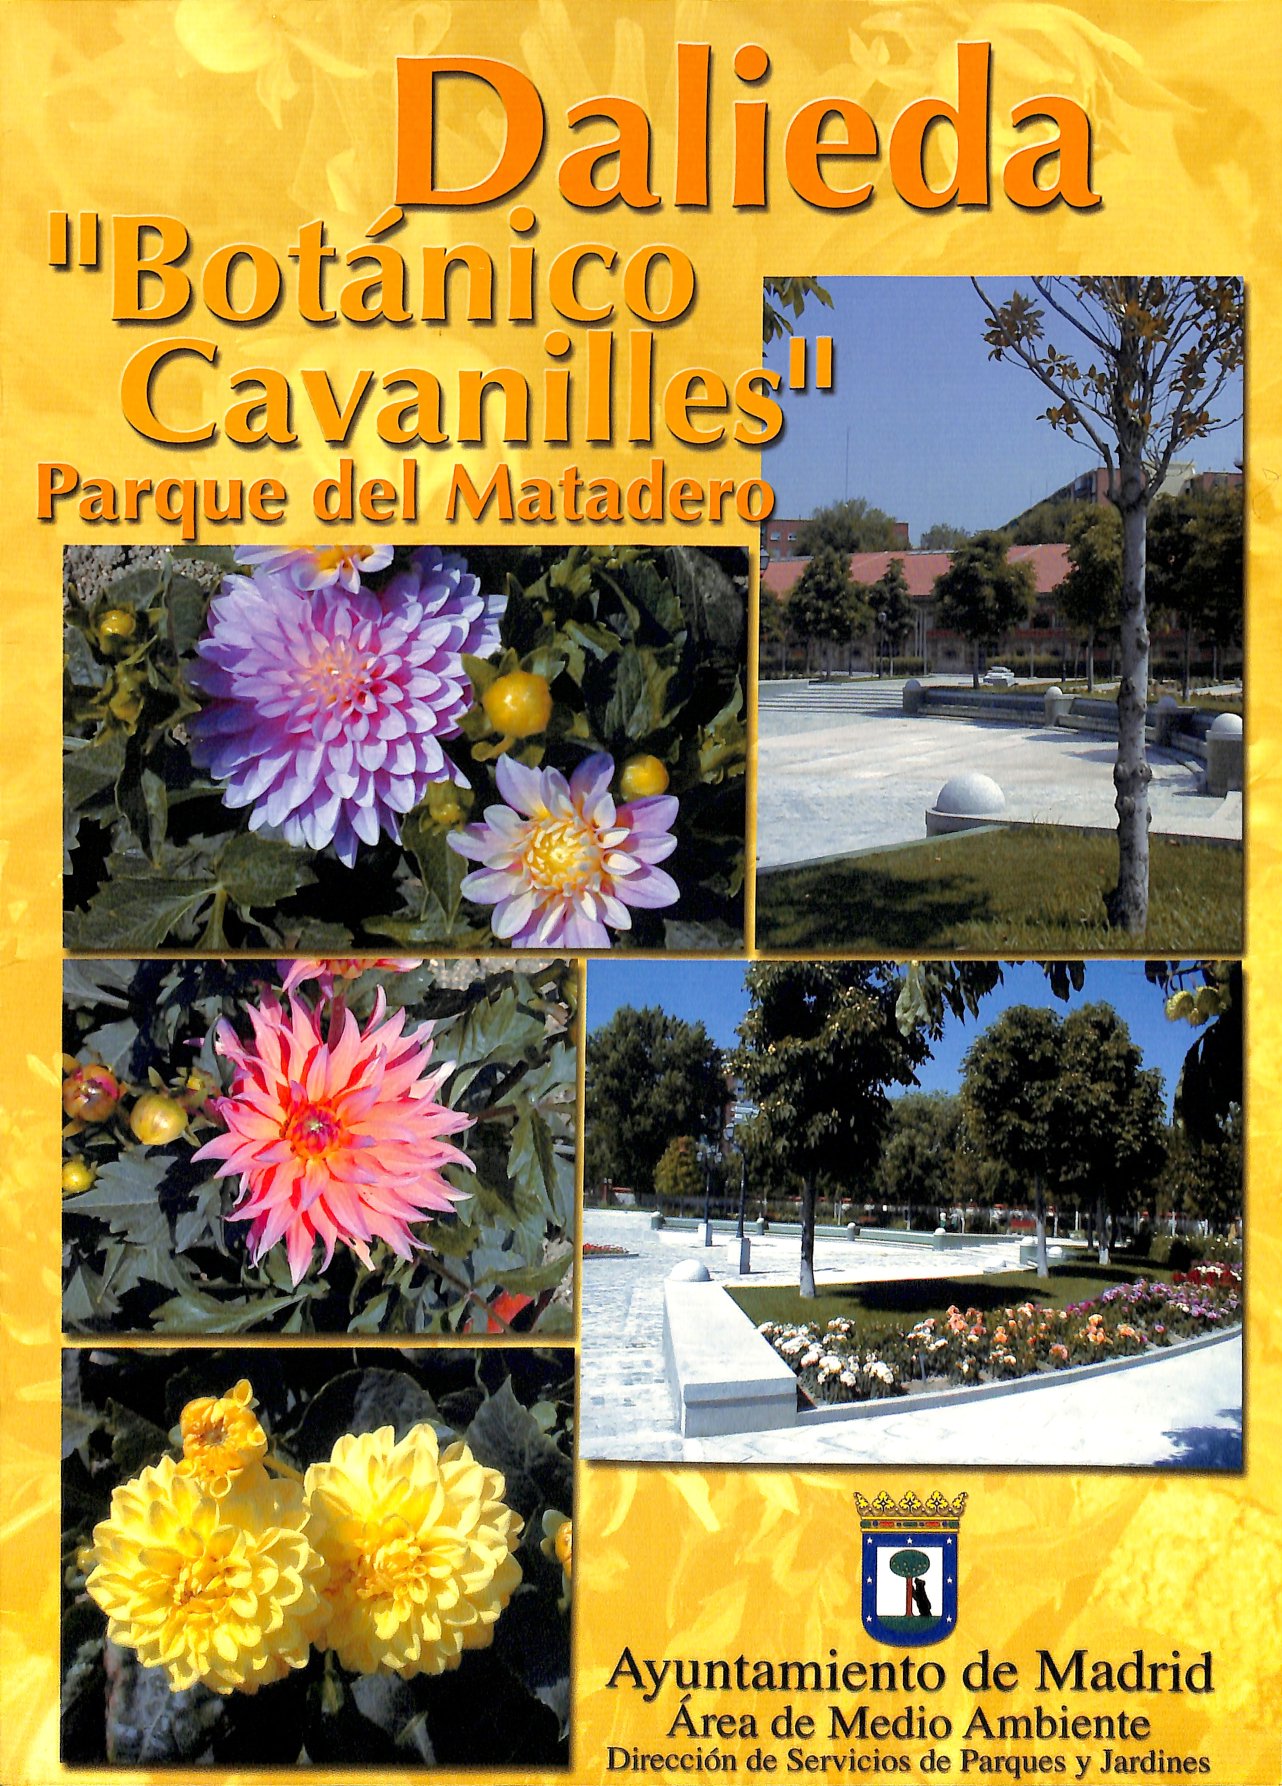 Dalieda "Botnico Cavanilles" Parque del Matadero